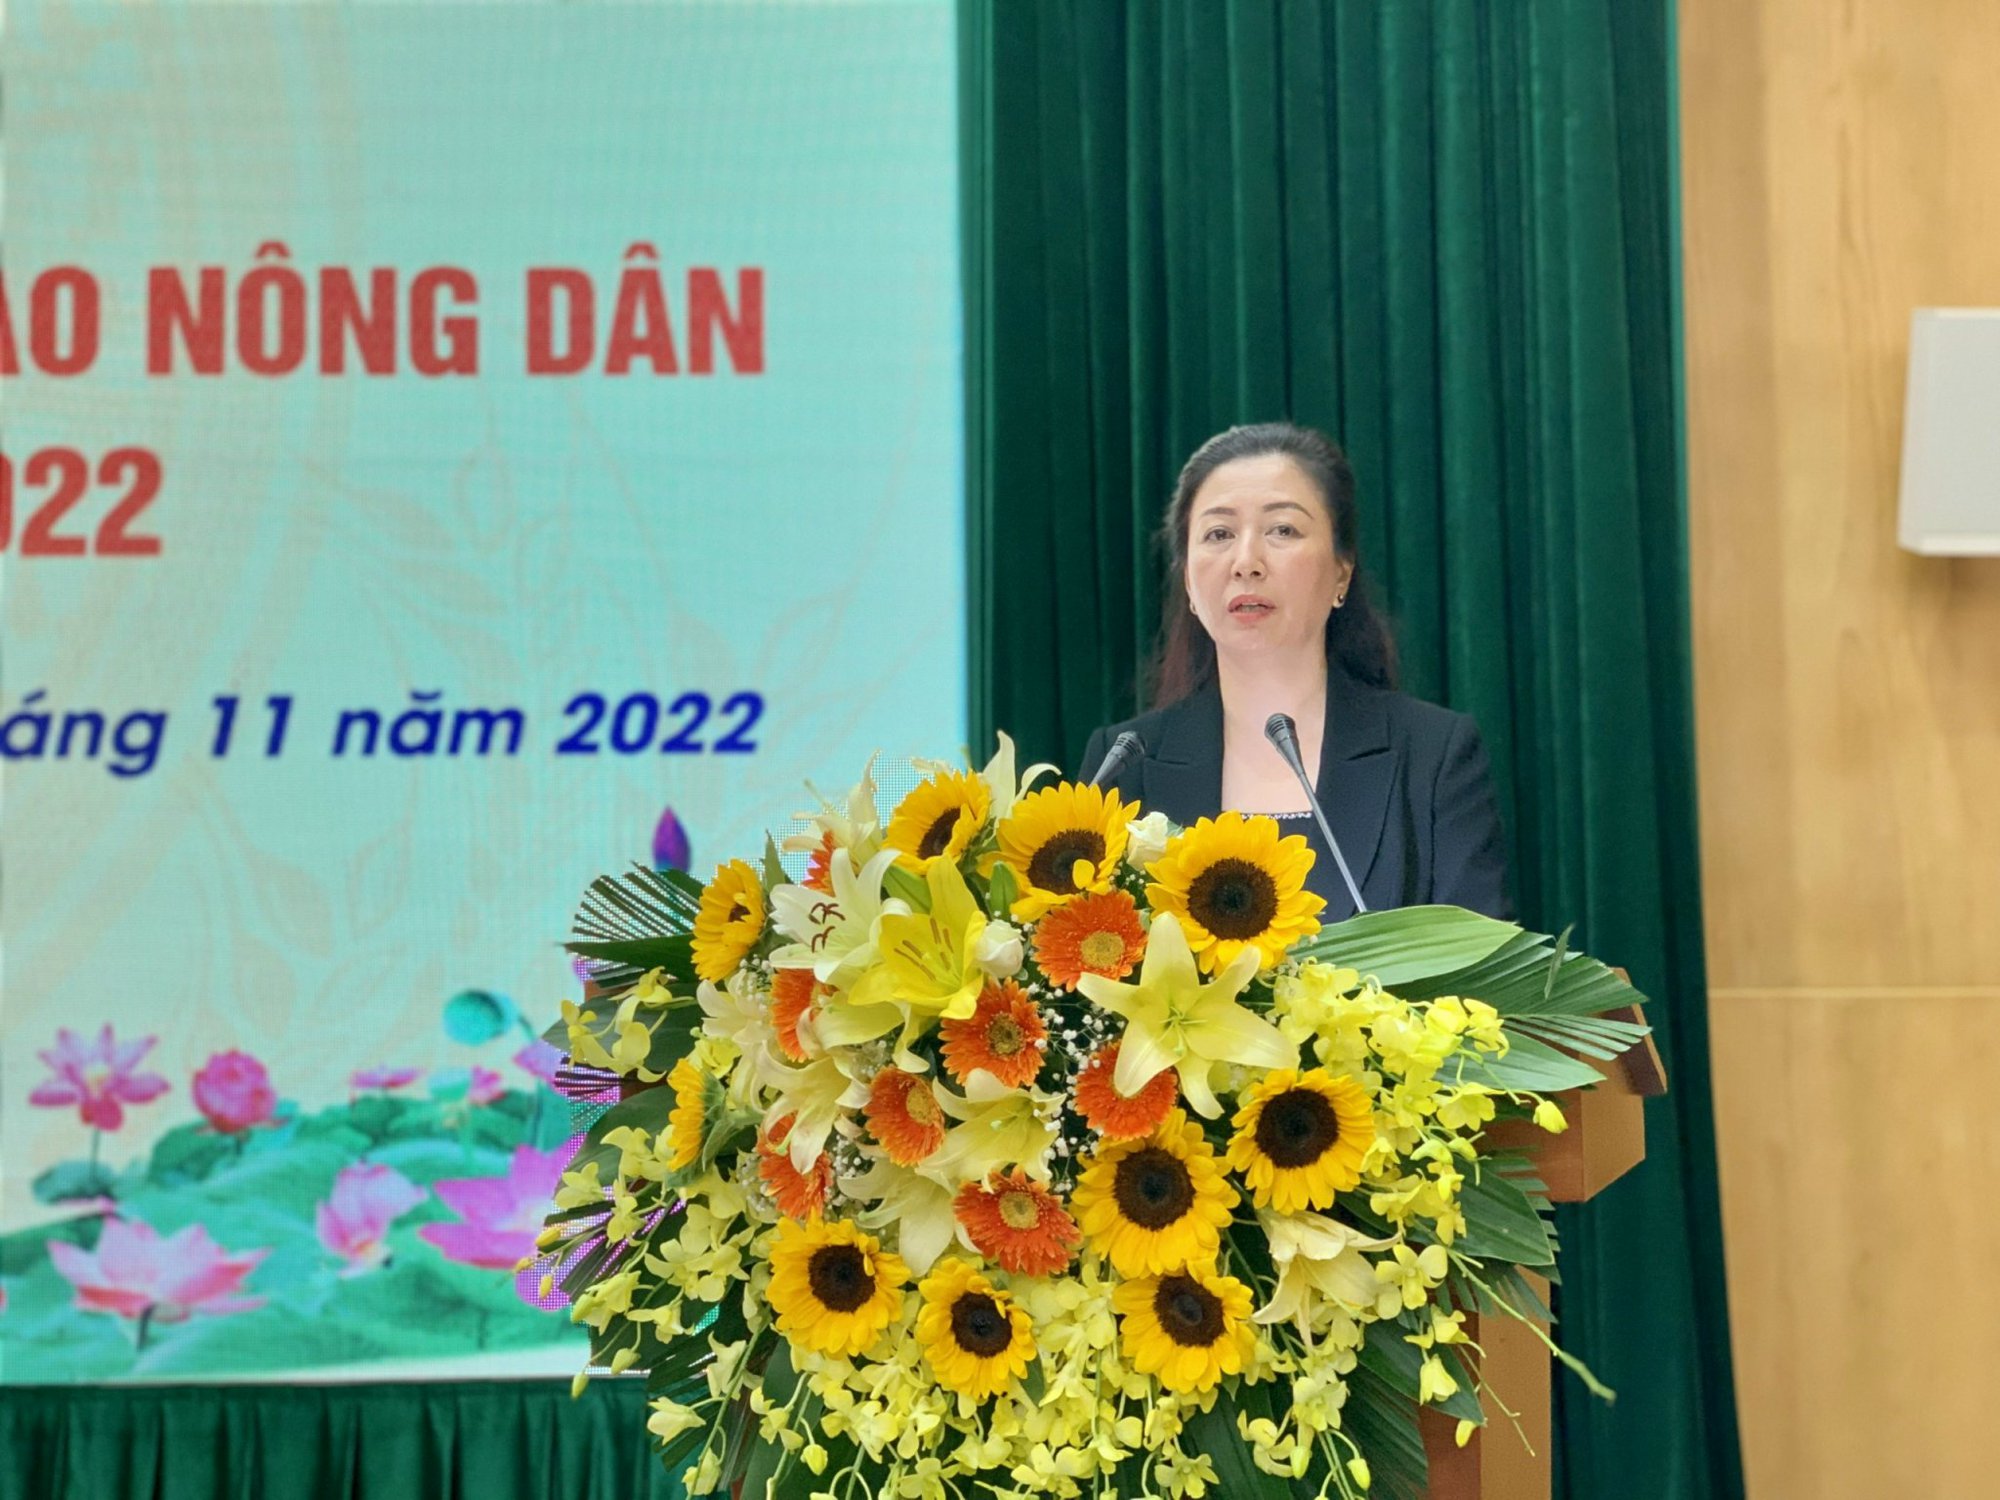 Phó Chủ tịch Thường trực Hội NDVN Phạm Tiến Nam chủ trì Hội nghị giao ban Cụm thi đua số 3 - Ảnh 2.